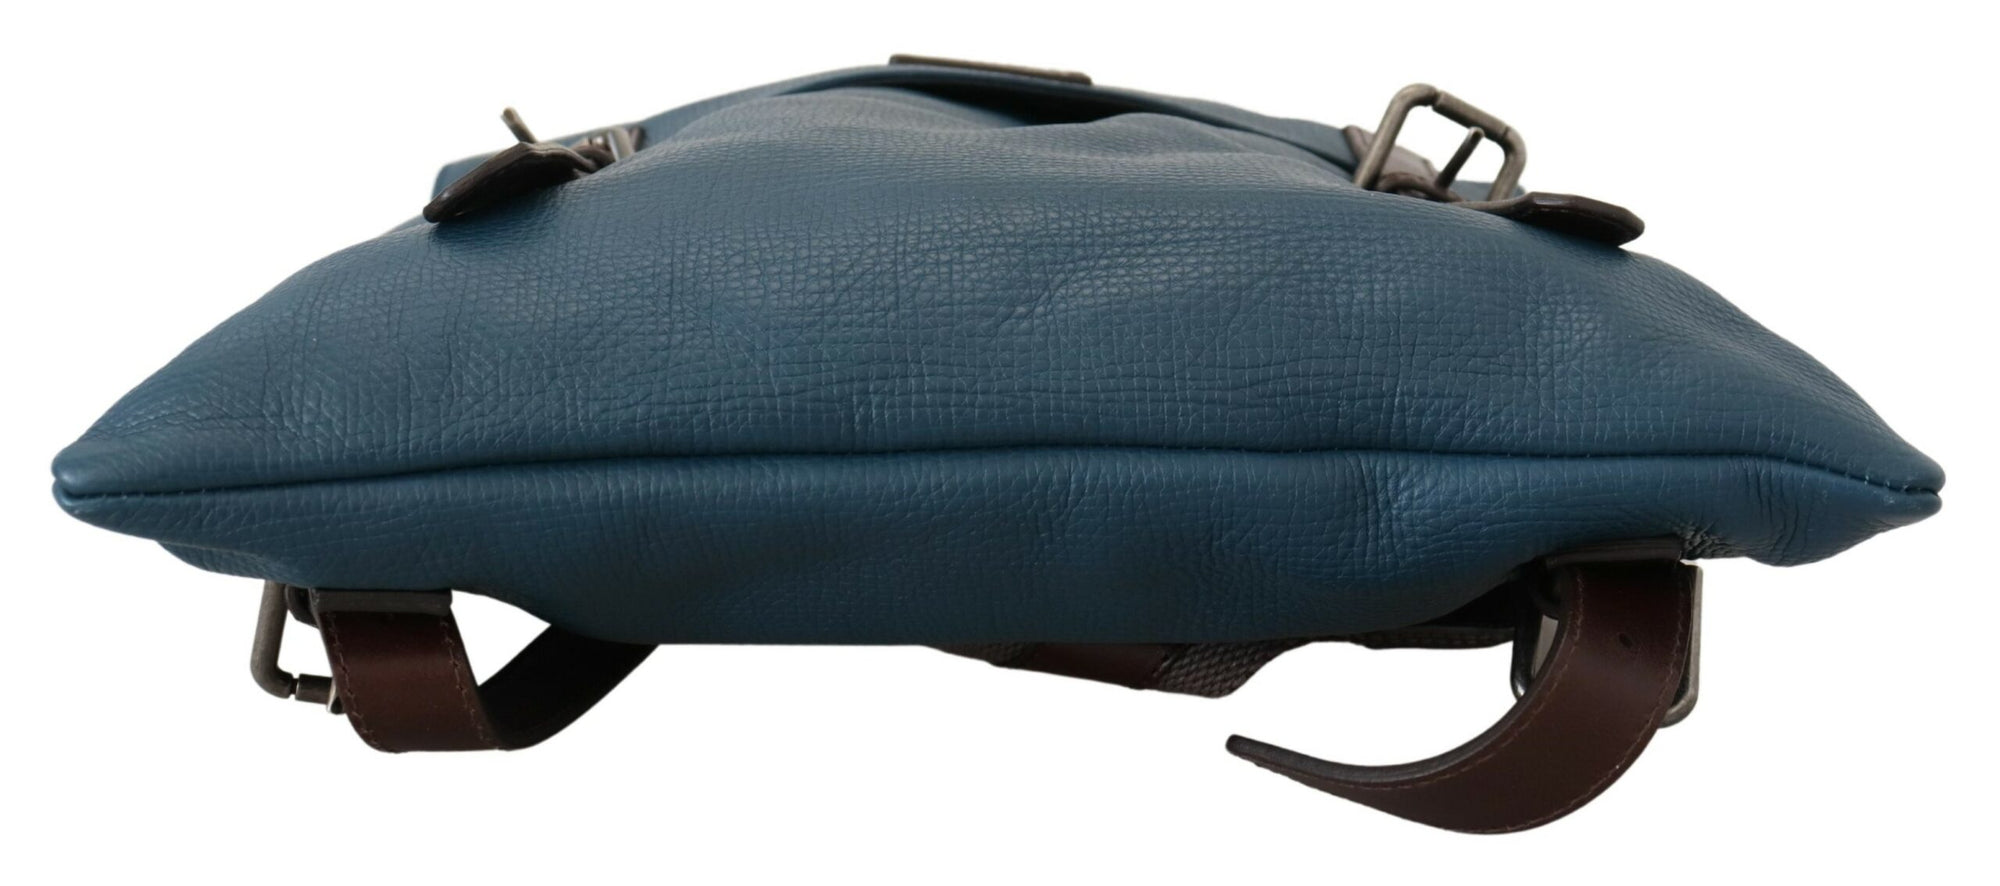 Elegant Blue Leather Backpack Bag